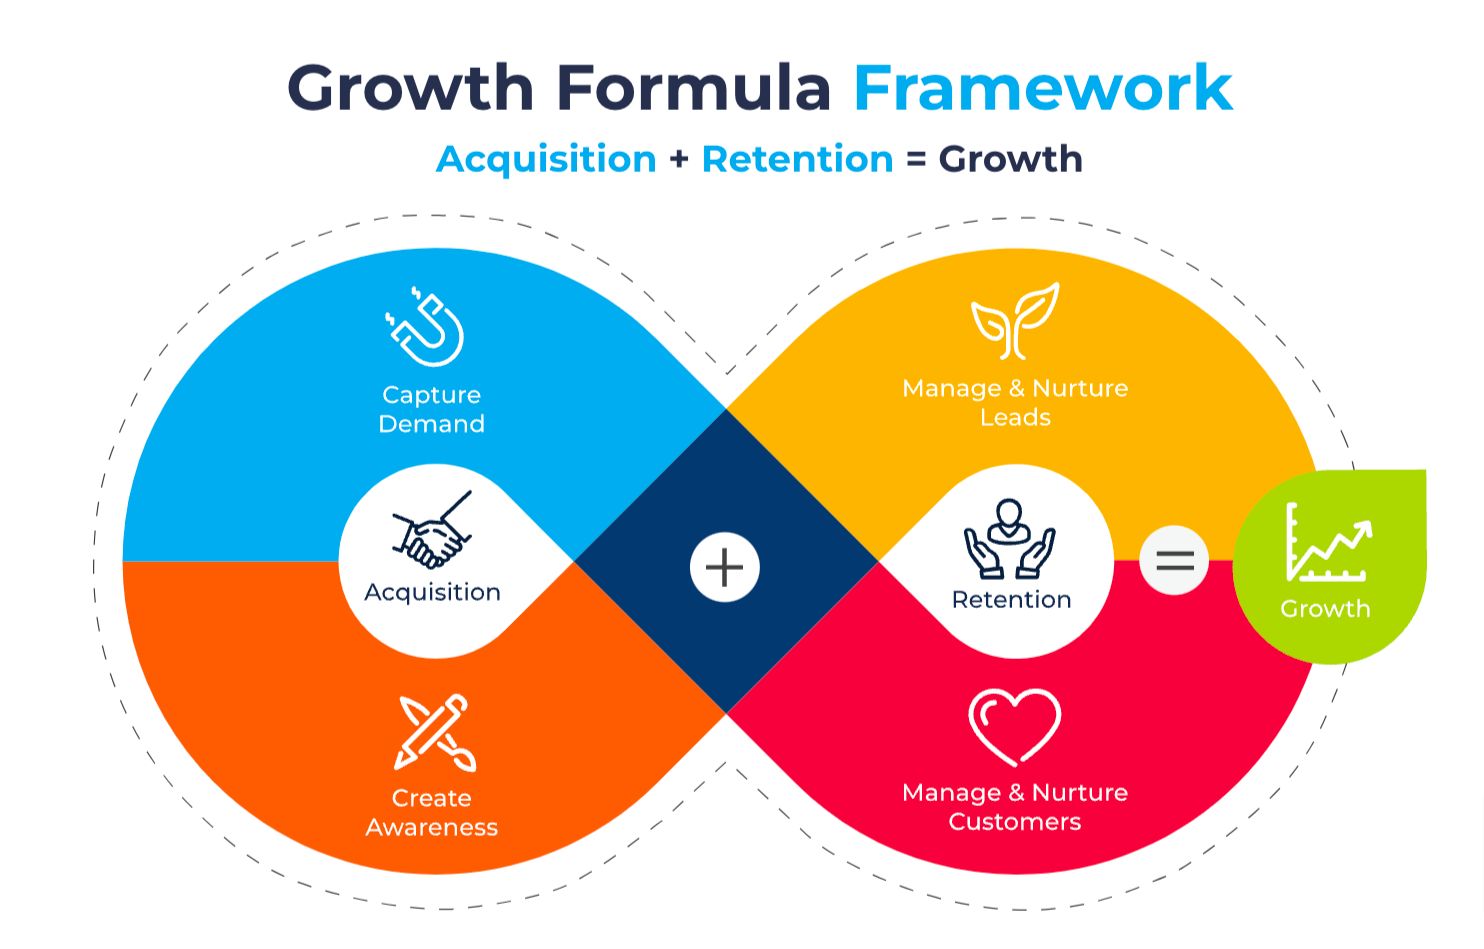 Growth formula framework